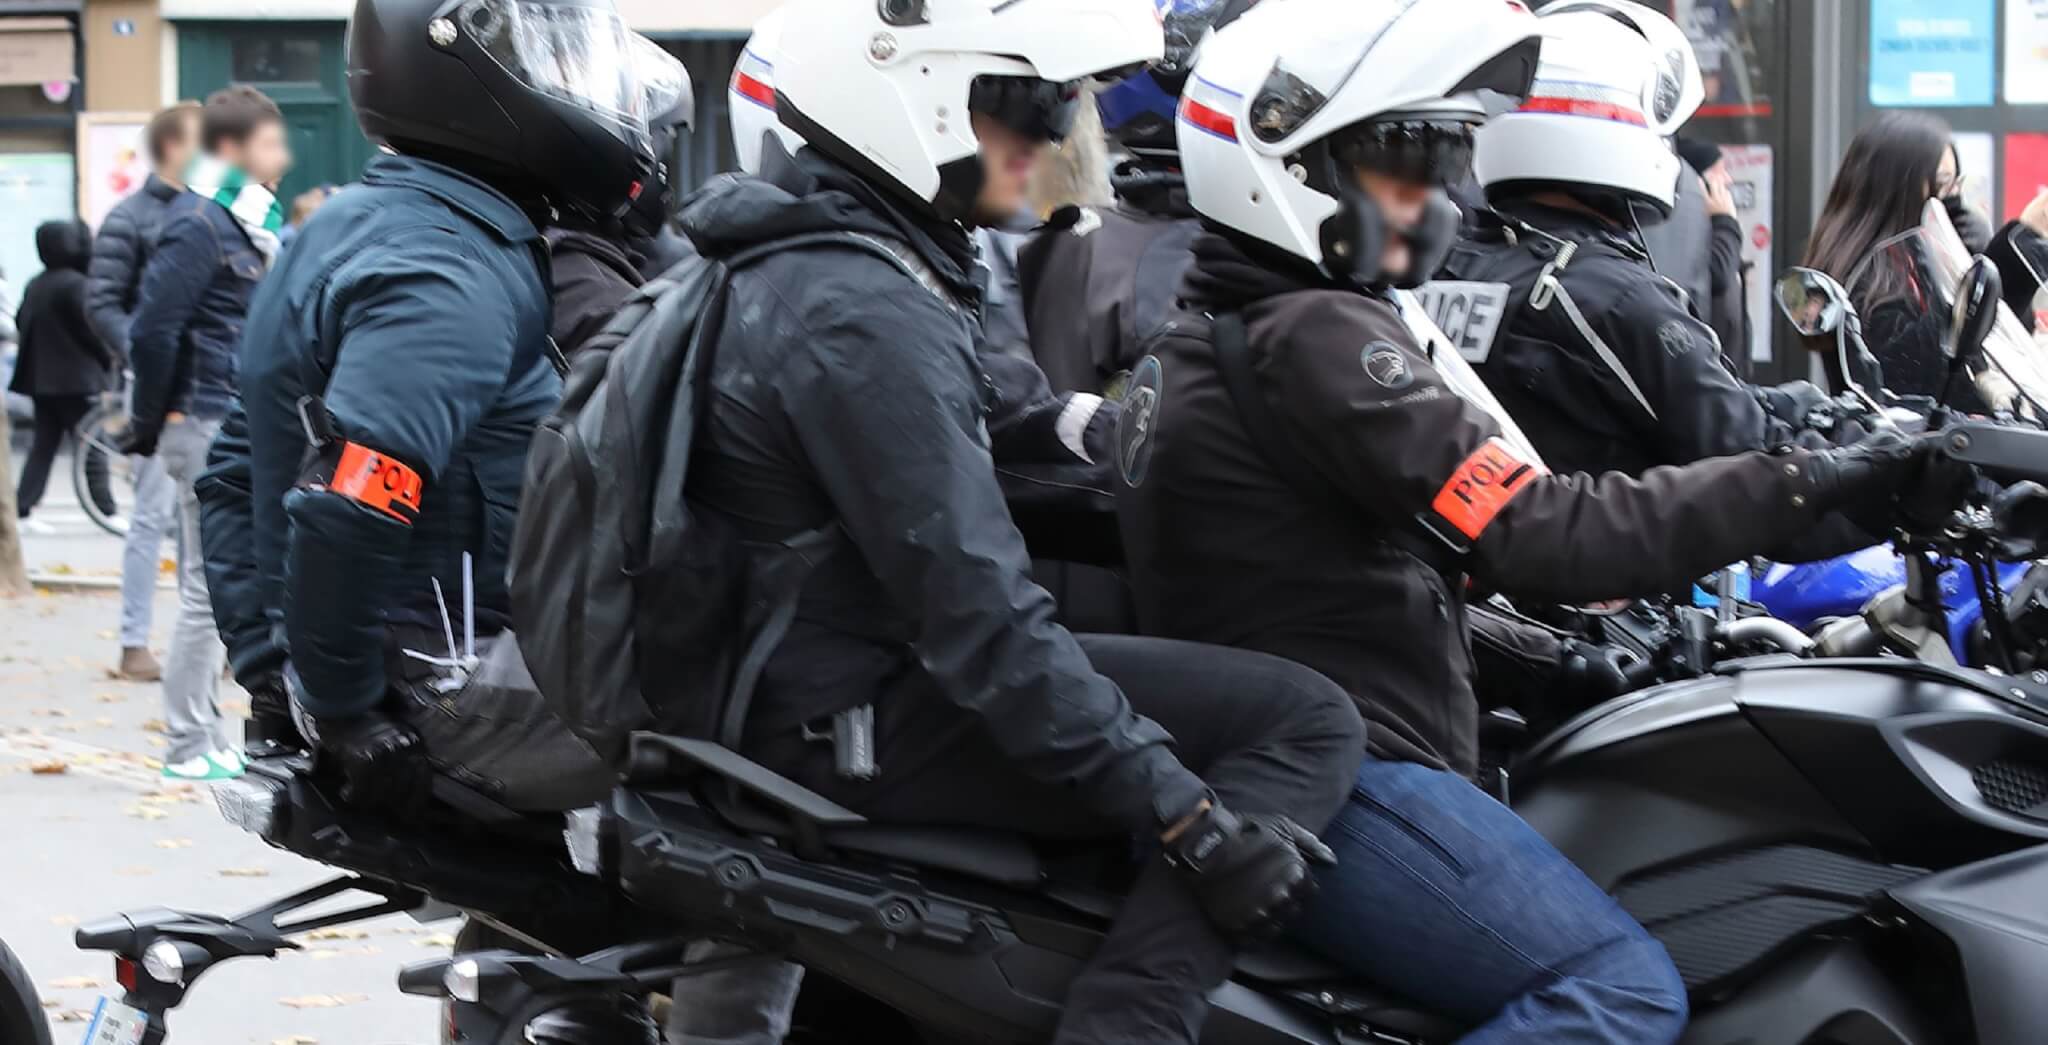 Photographe syrien blessé lors d'une manifestation à Paris : un commissaire de police mis en examen